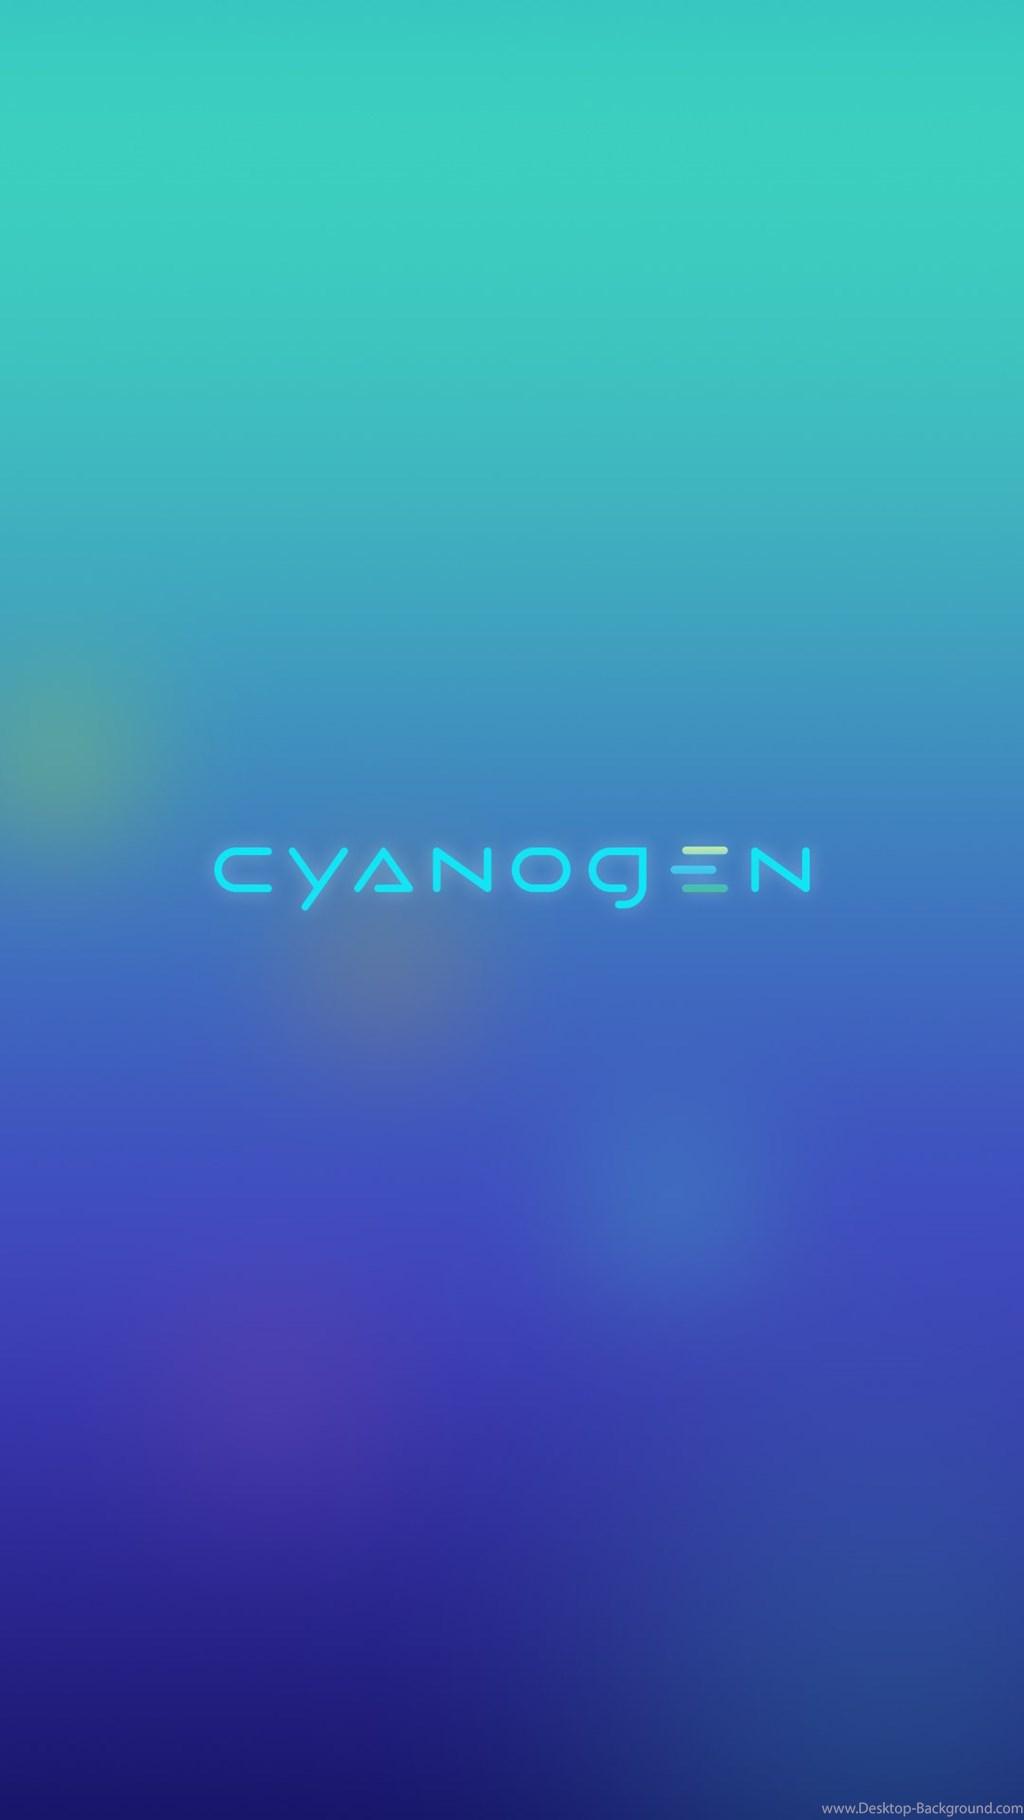 Cyanogen New Wallpaper Edit By Me, Enjoy Download